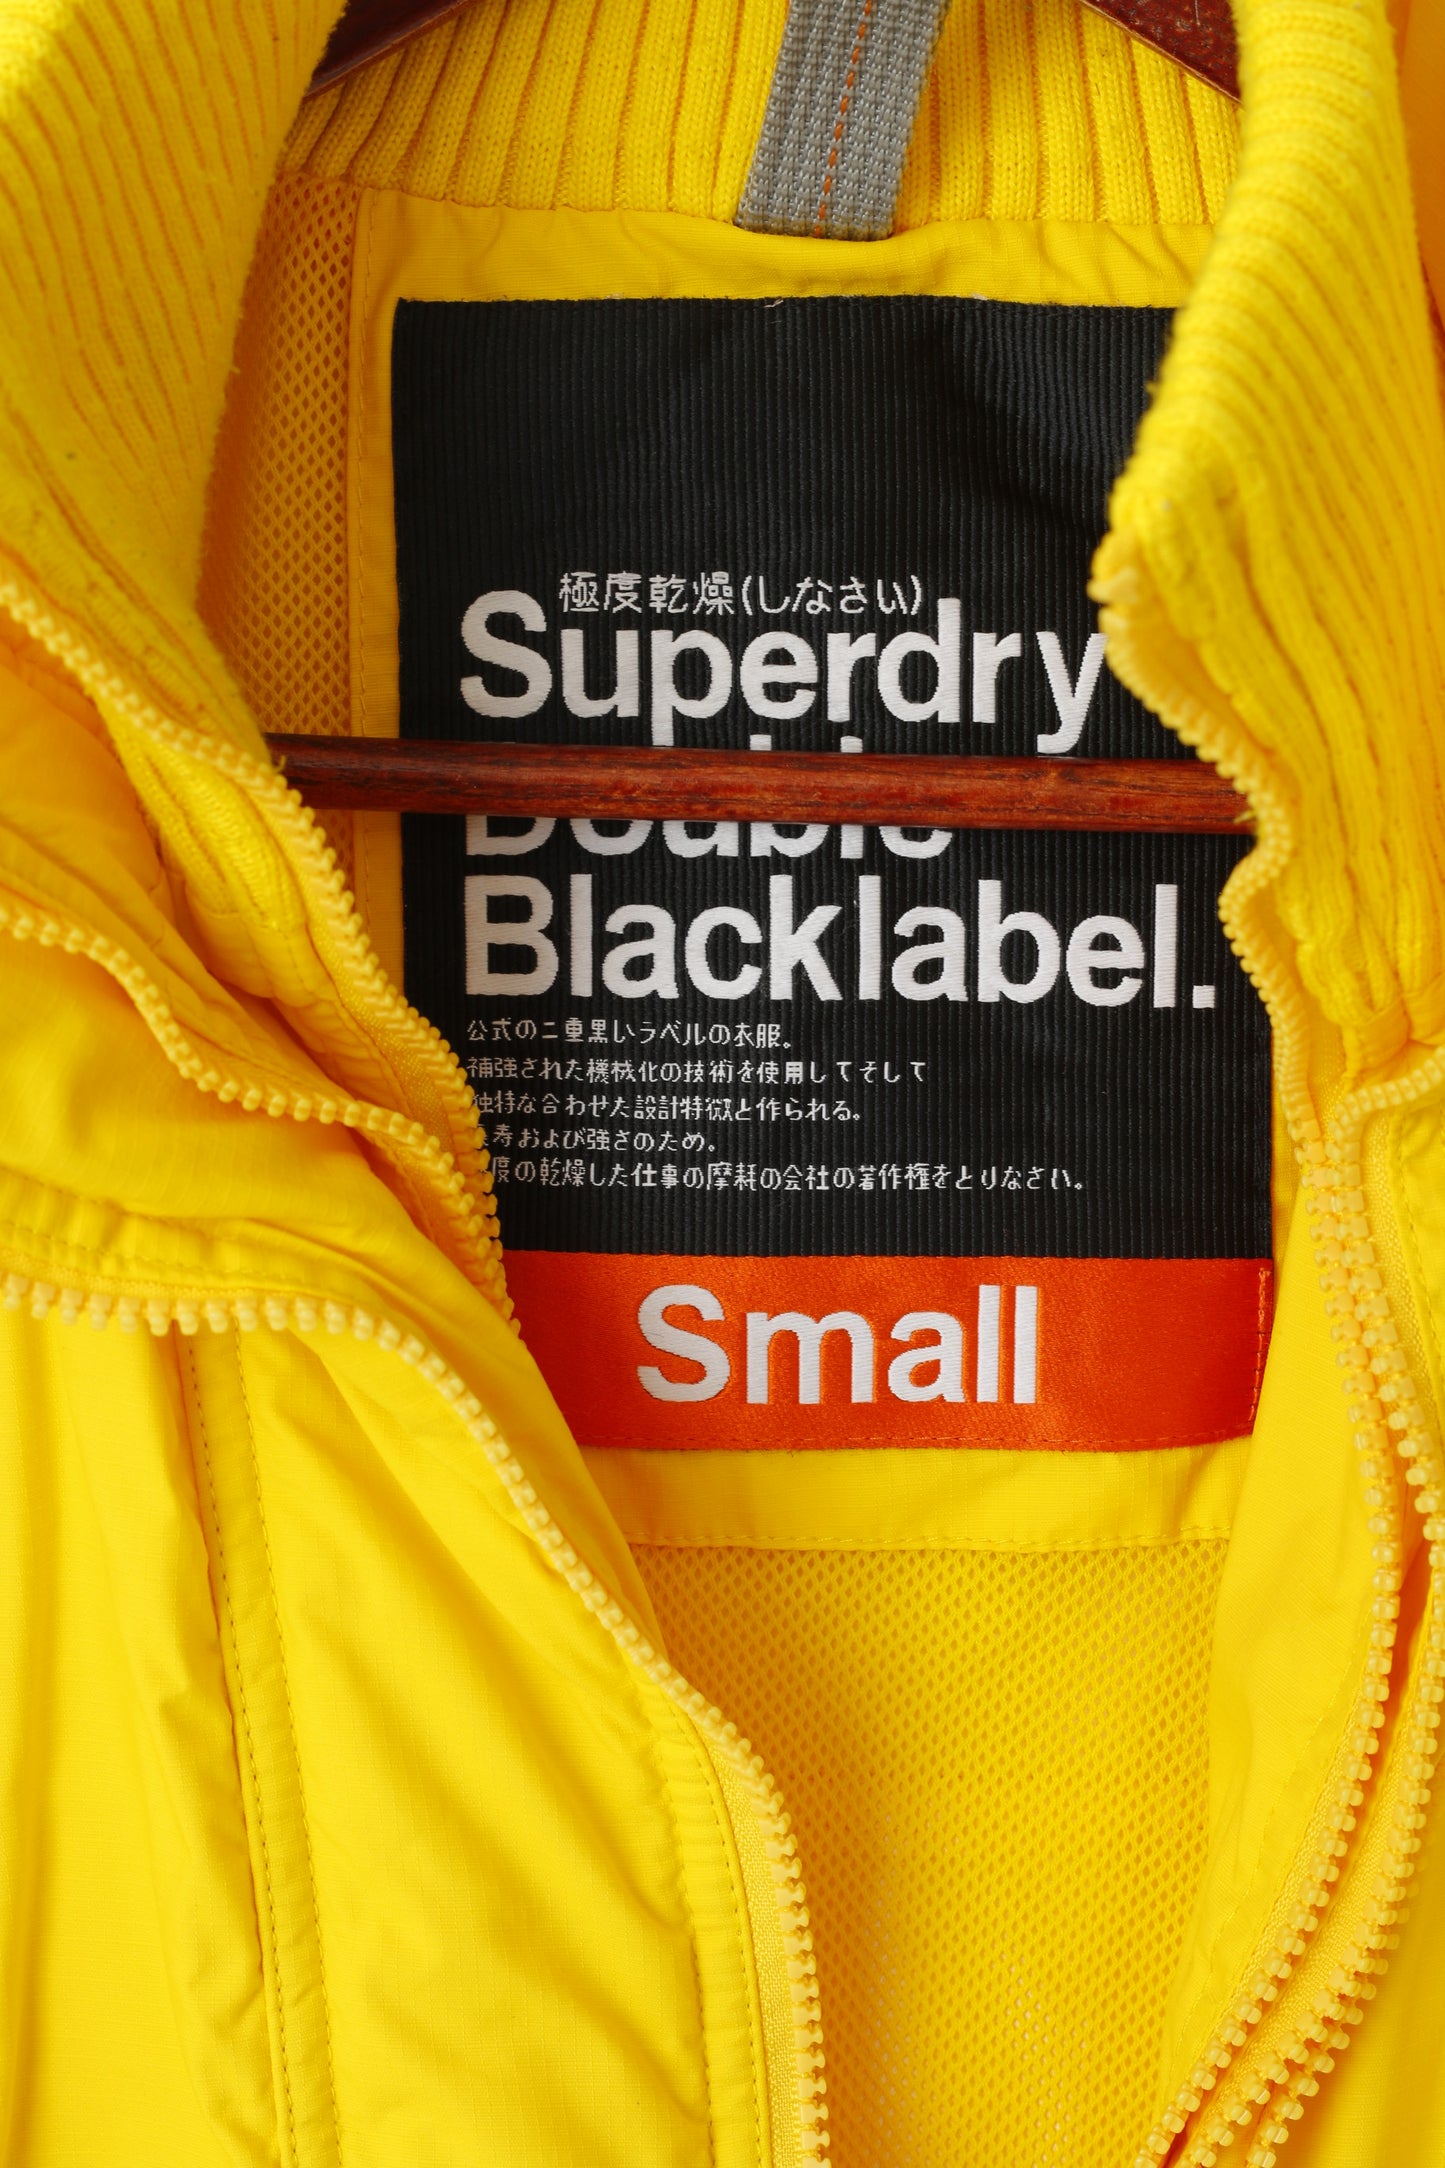 Giacca da donna Superdry gialla con doppia etichetta nera in nylon con 3 cerniere e parte superiore leggera